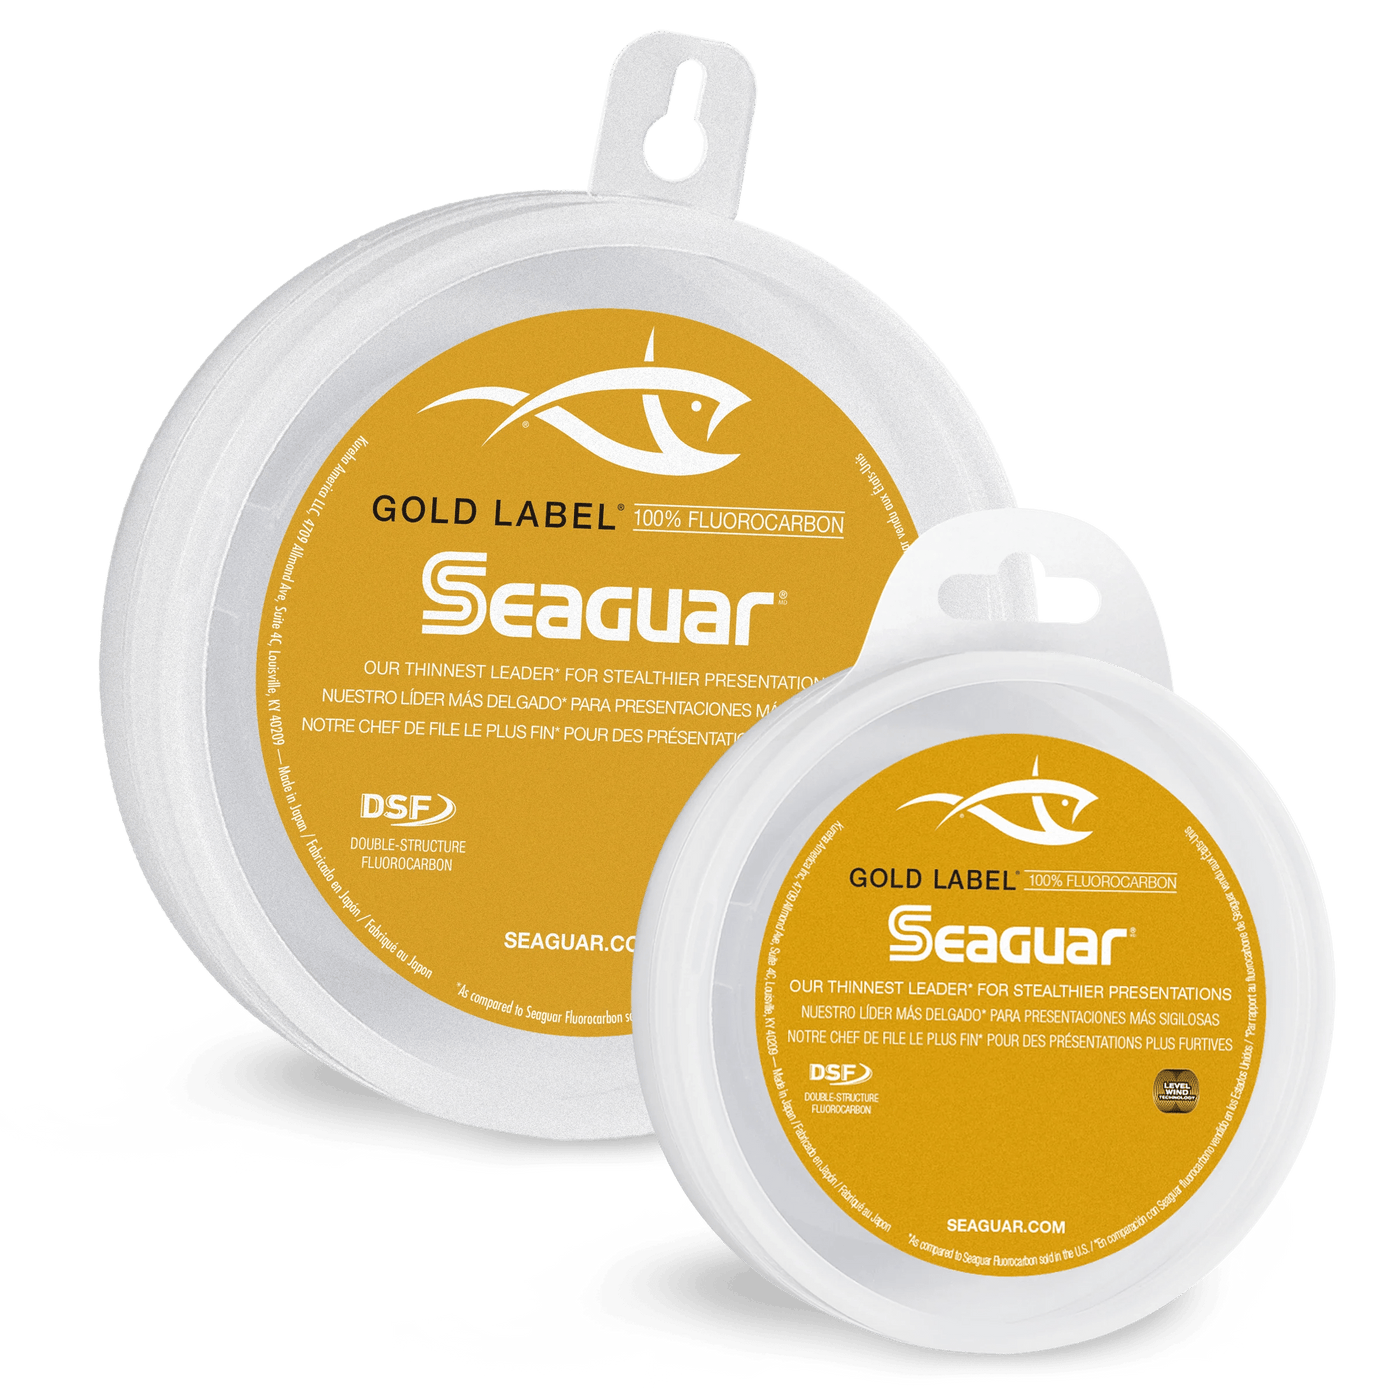 Seaguar Gold Label Fluorocarbon Fishing Line Seaguar 